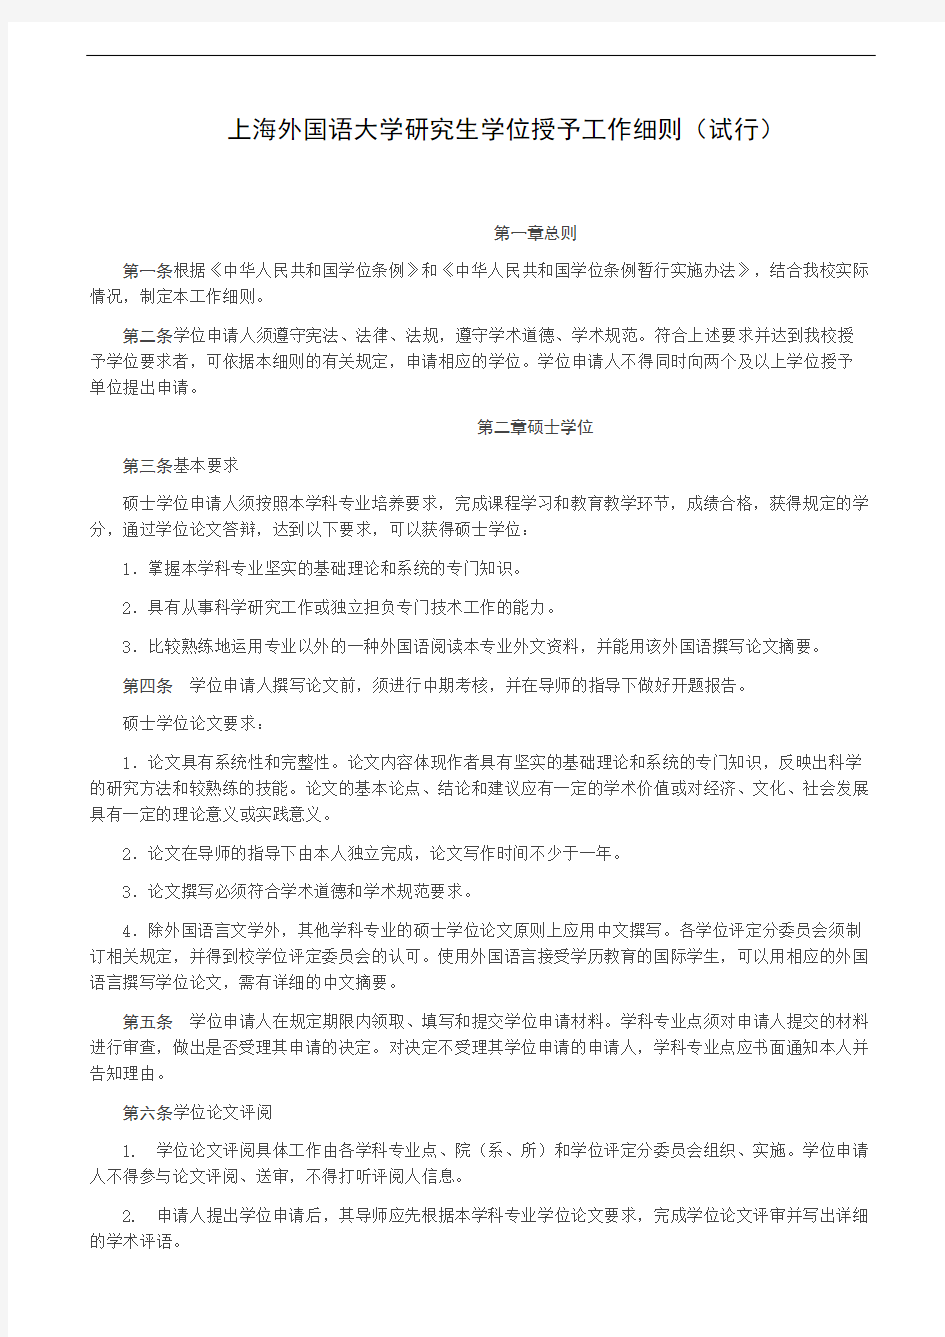 上海外国语大学研究生学位授予工作细则(试行)